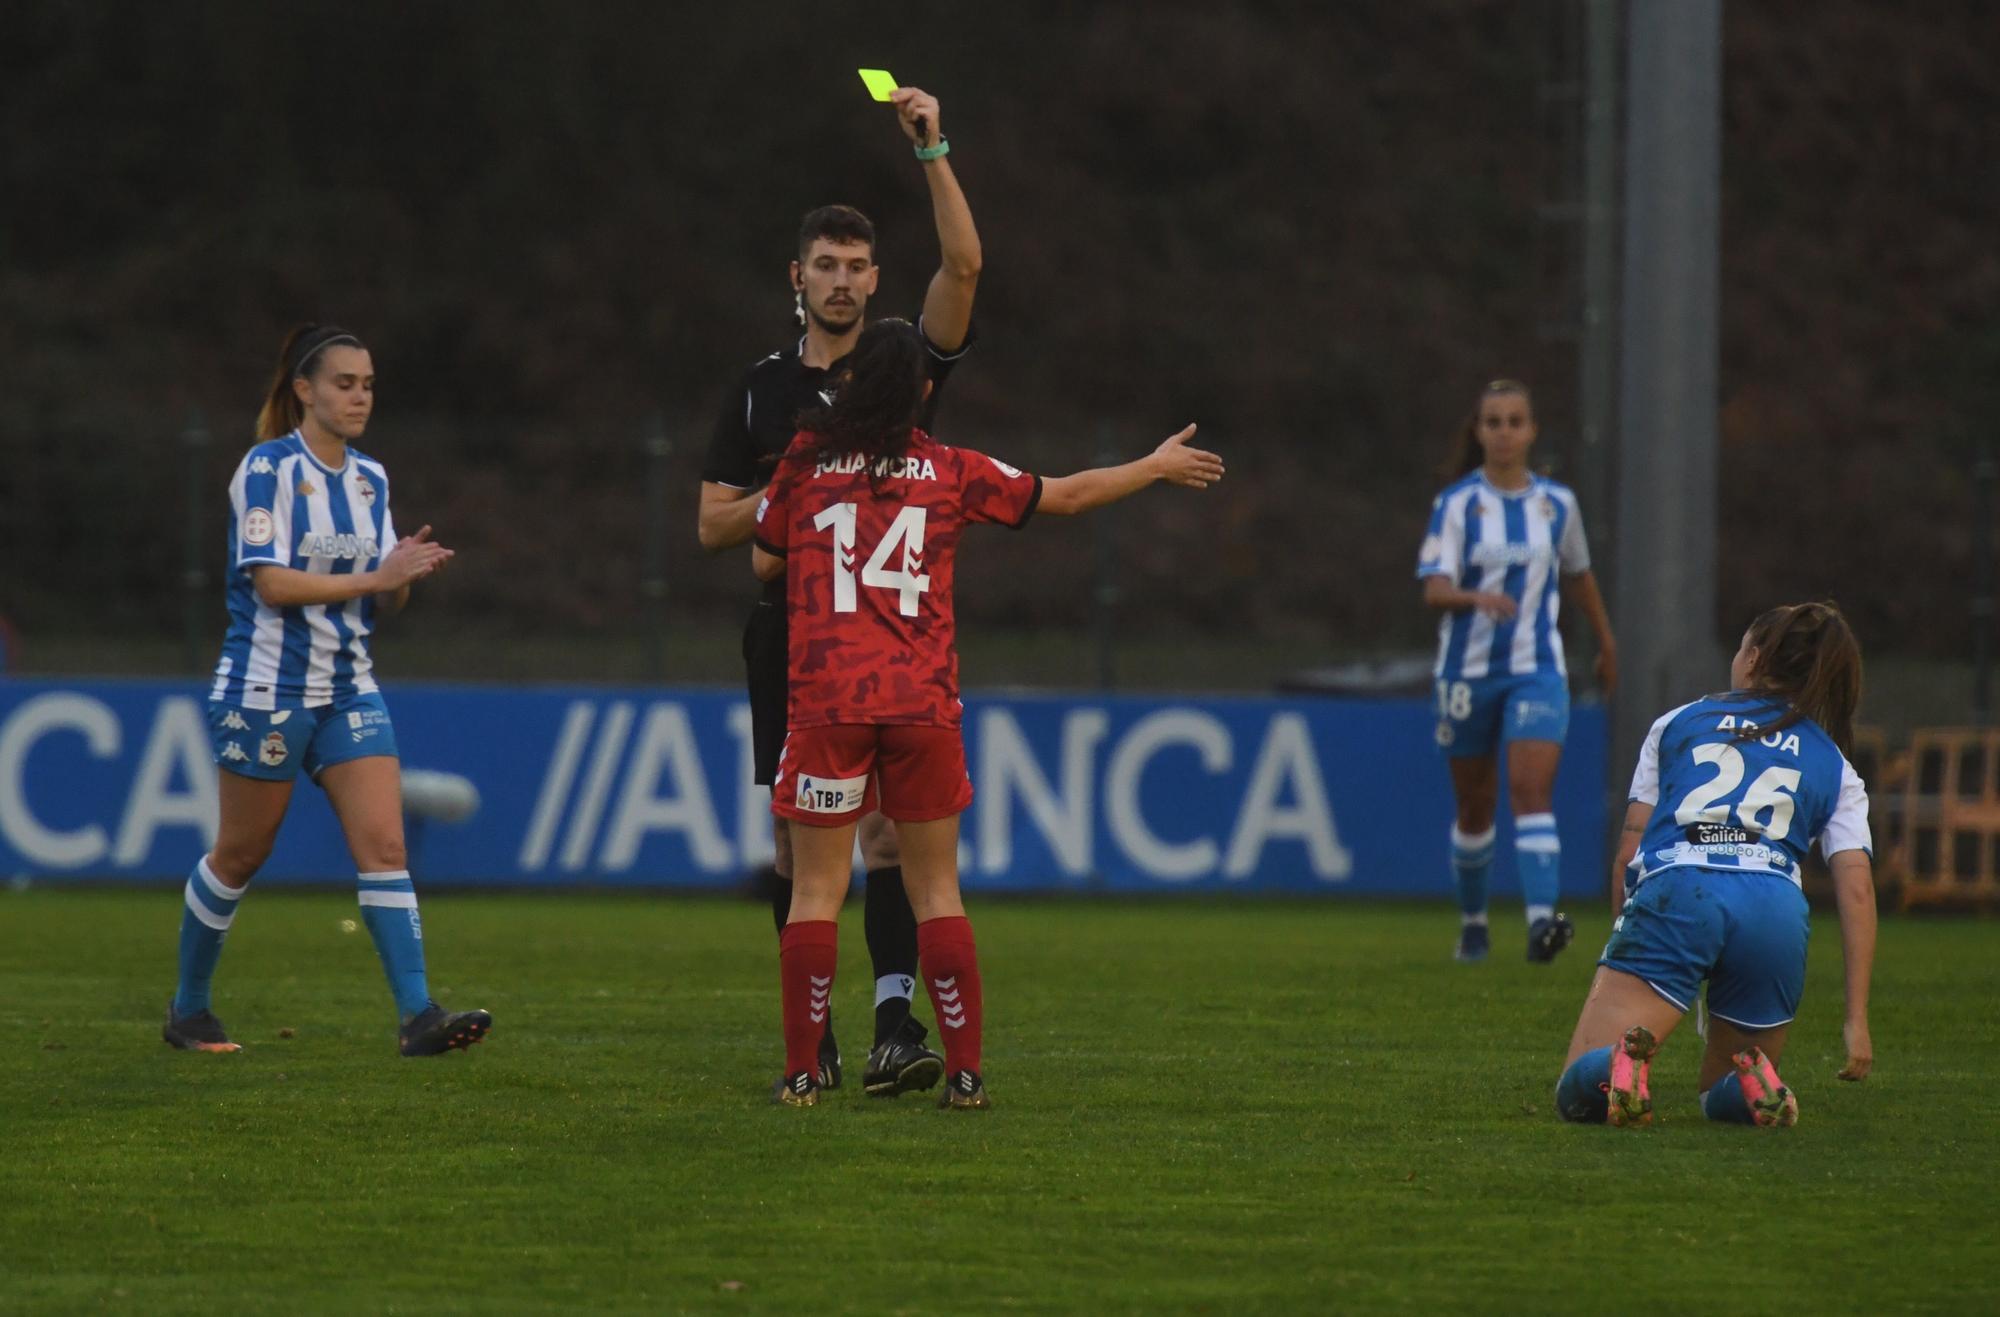 El Dépor Abanca golea 3-0 al Levante Las Planas